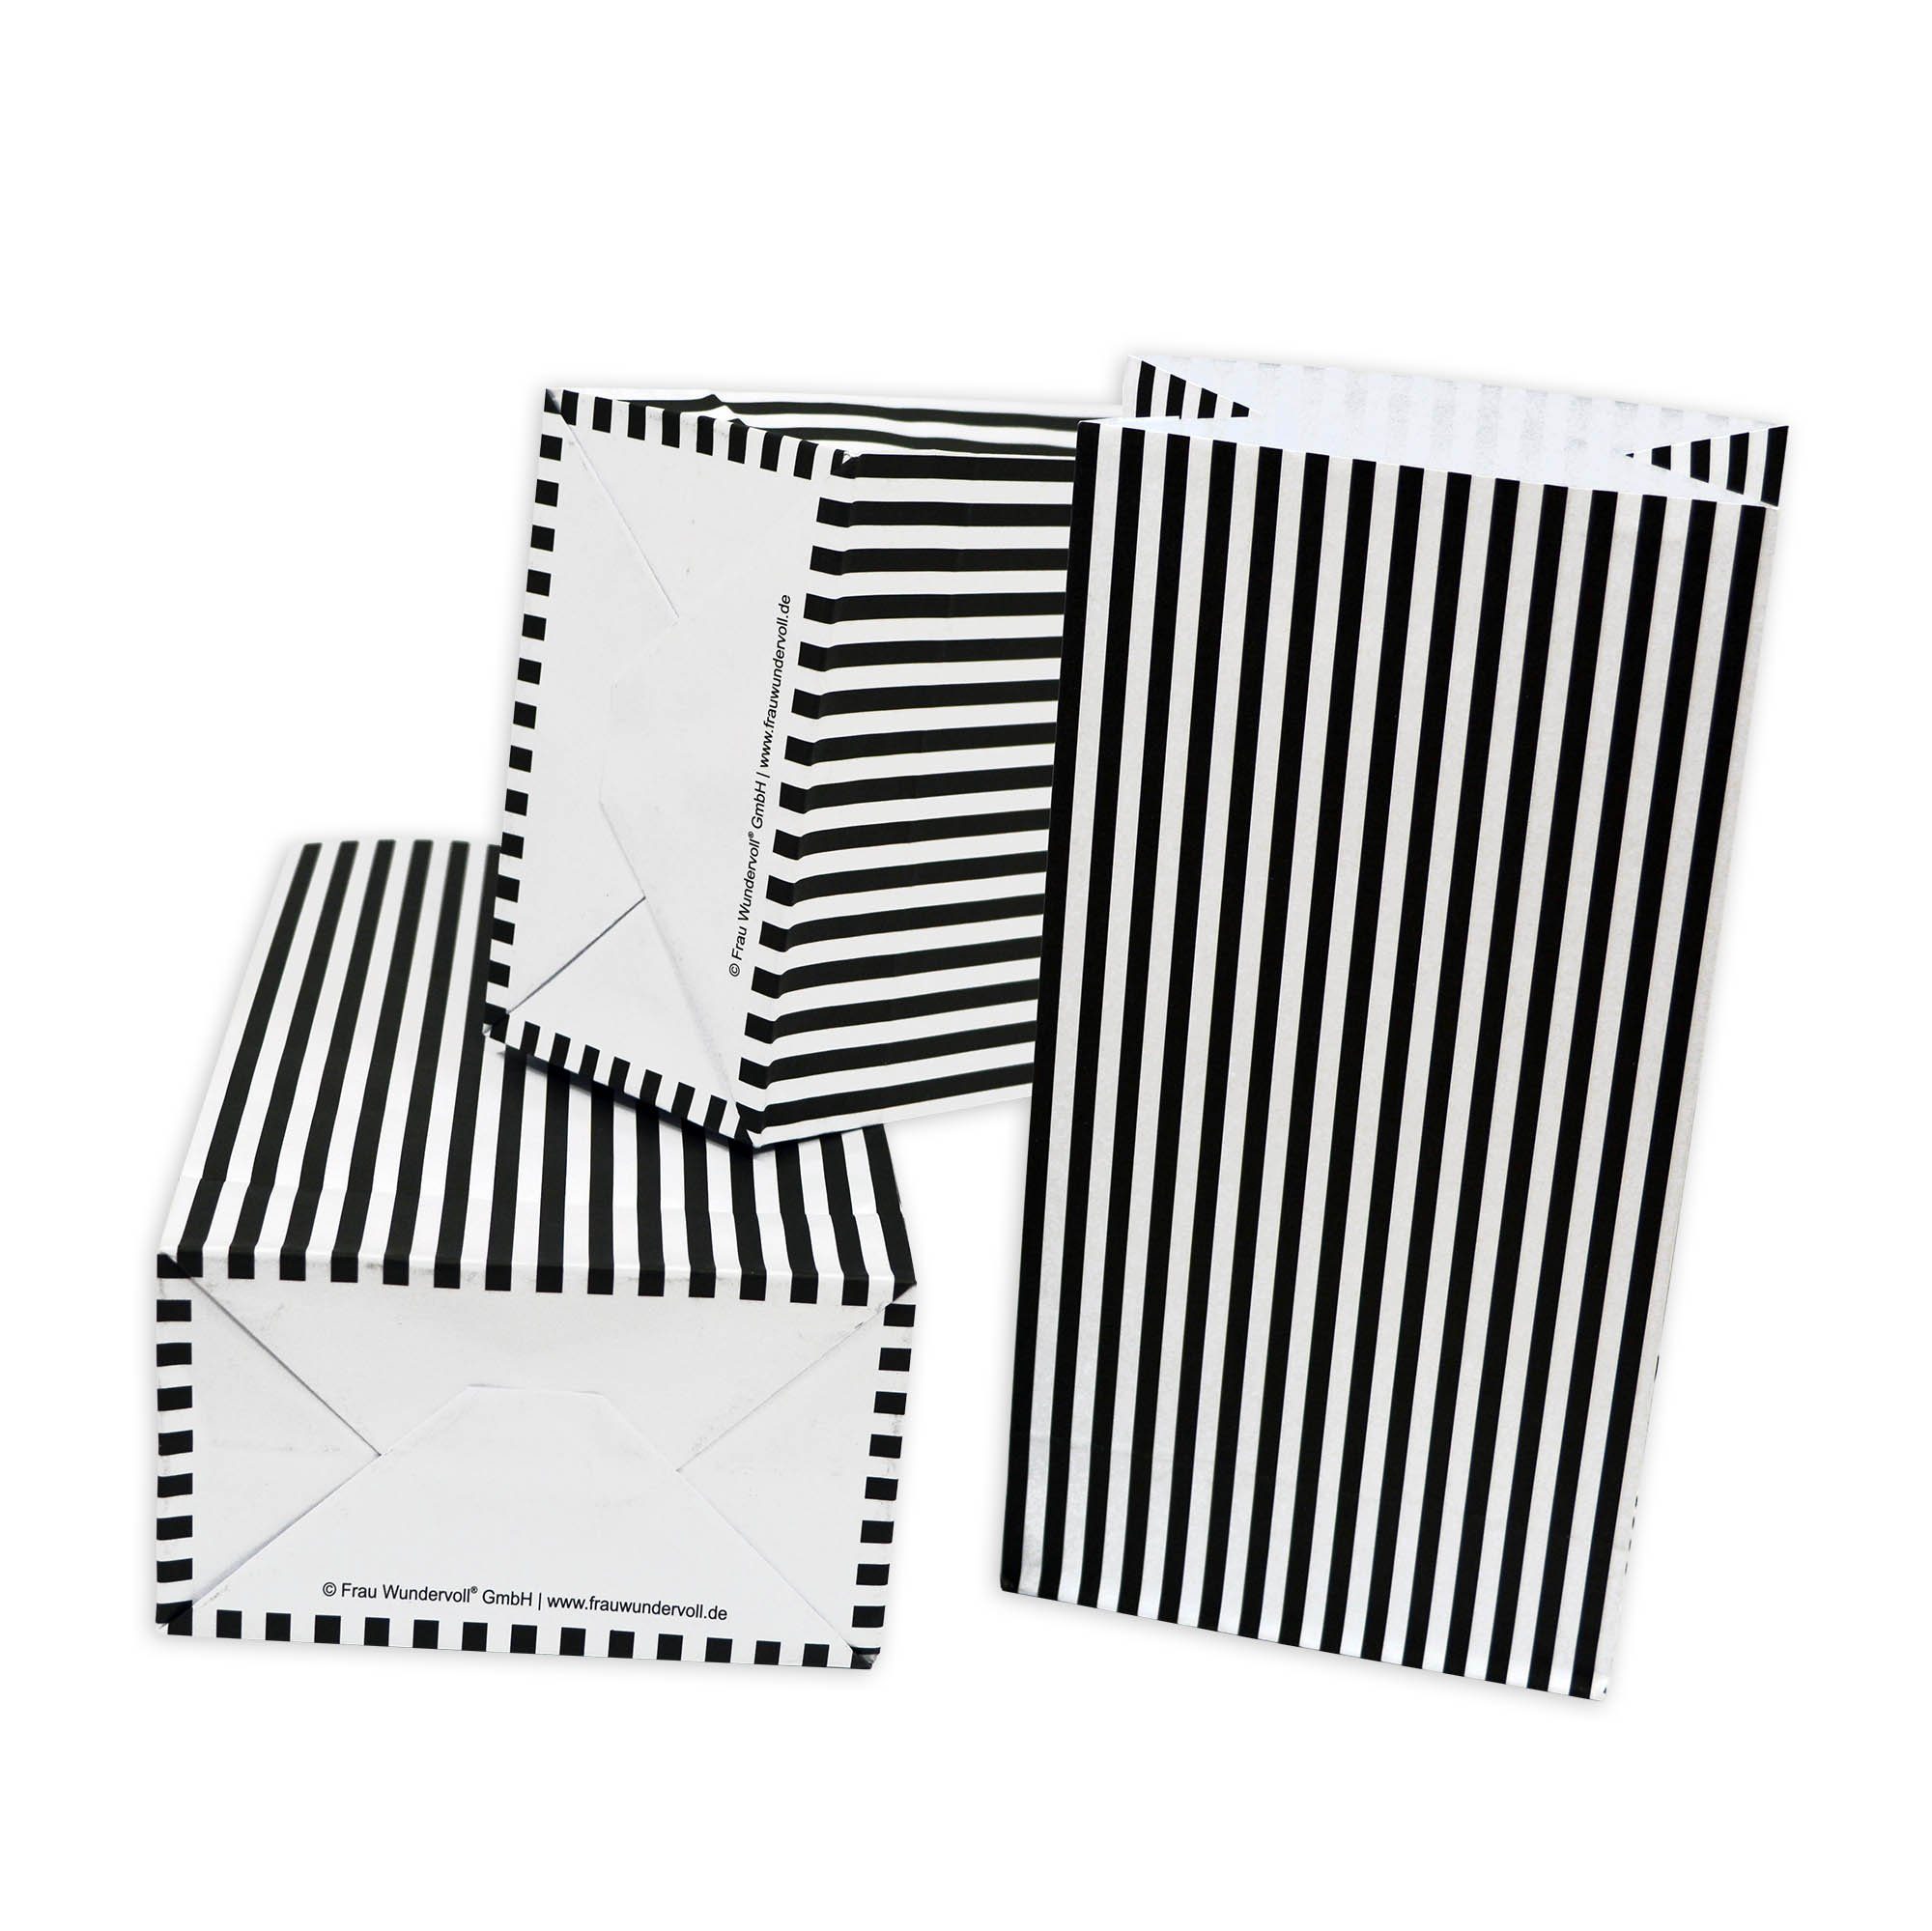 Frau WUNDERVoll Papierdekoration 12 Papiertüten mit Boden - schwarz matt mit weißen Streifen, 100g